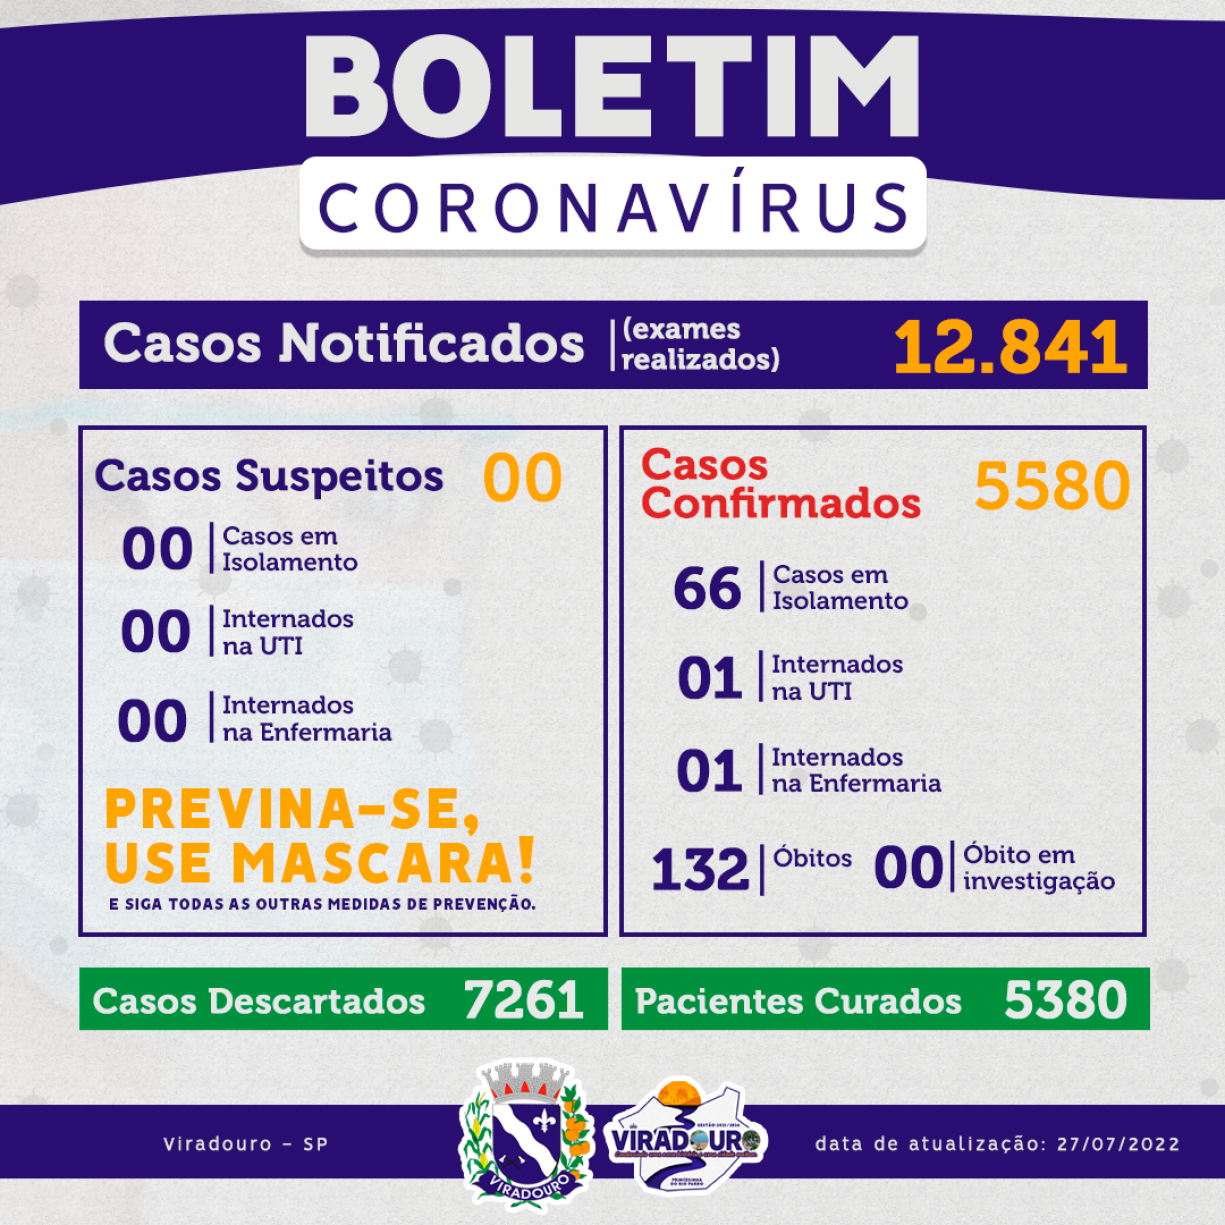 CORONAVÍRUS: BOLETIM EPIDEMIOLÓGICO (ATUALIZAÇÃO 27/07/2022)